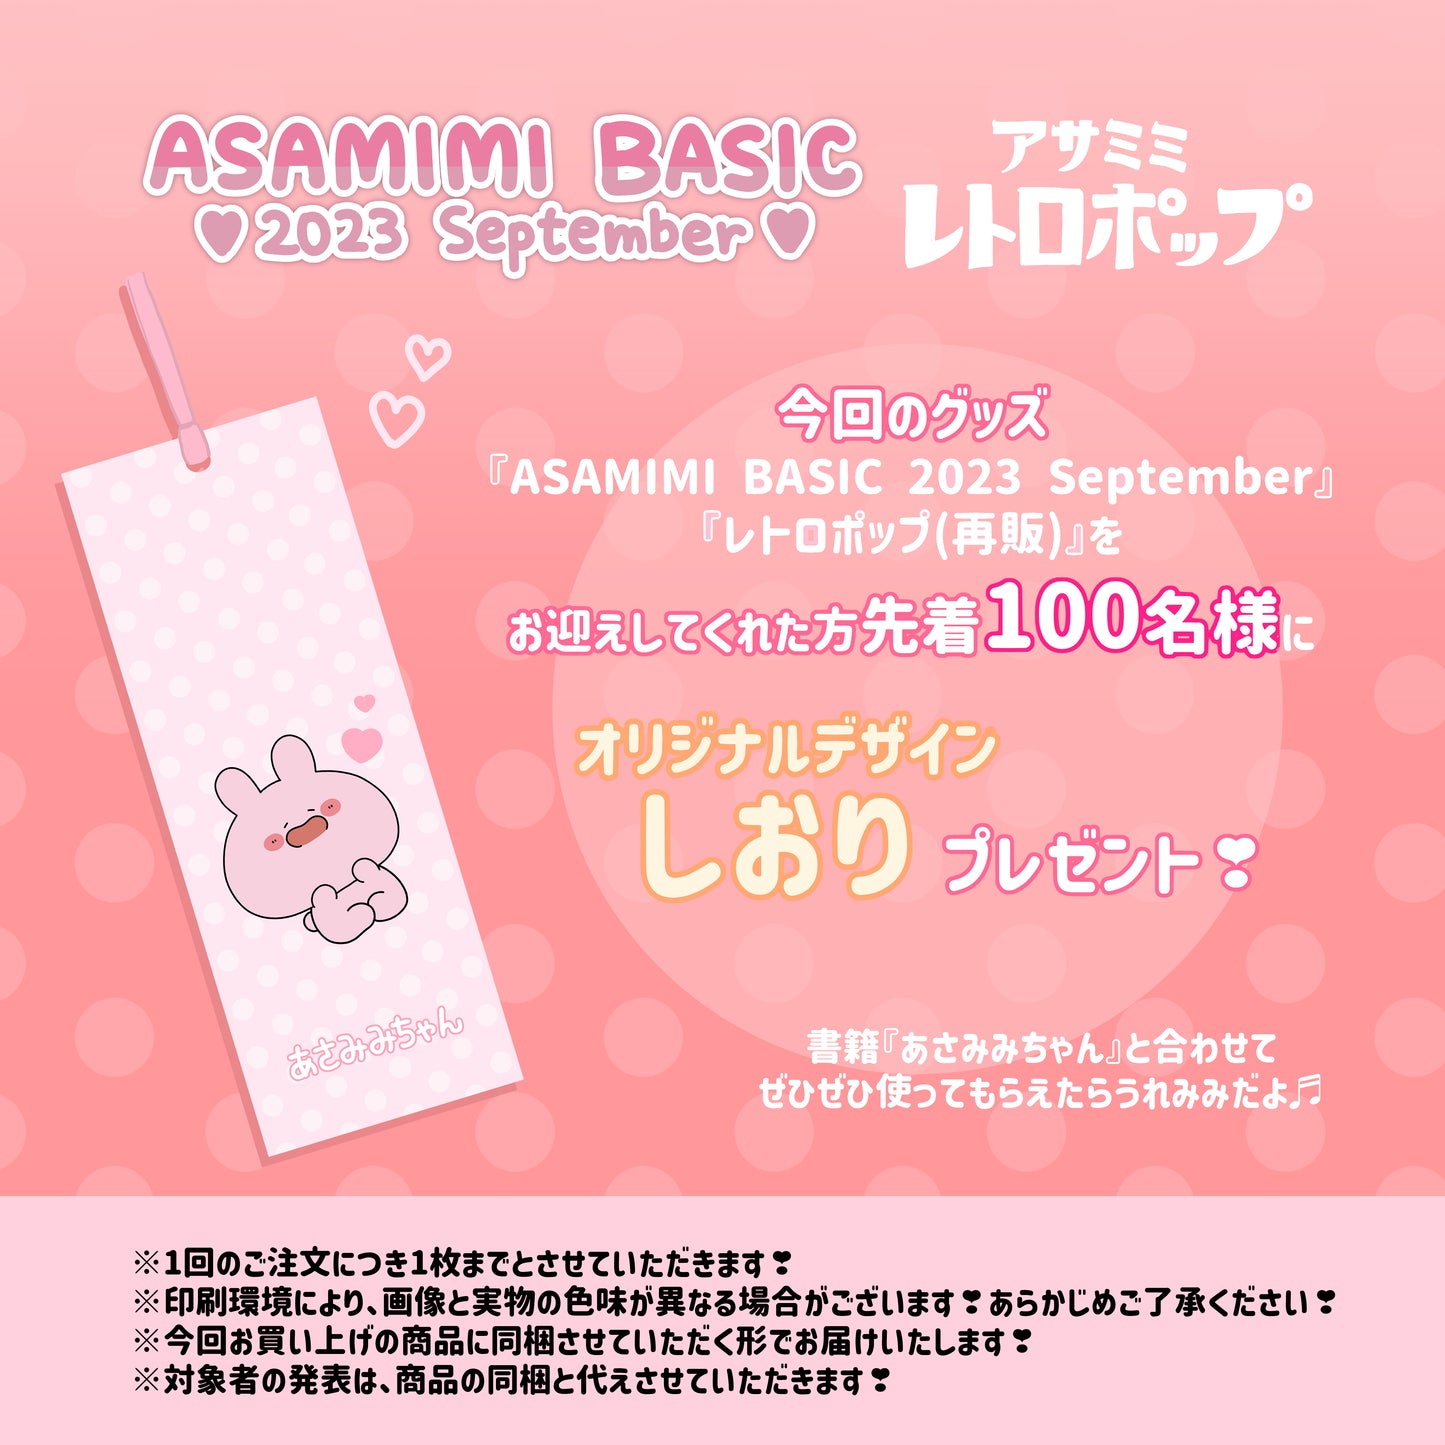 [Asamimi-chan] Règle Pienga Ippai 15 cm (ASAMIMI BASIC 2023 septembre) [Expédié mi-novembre]